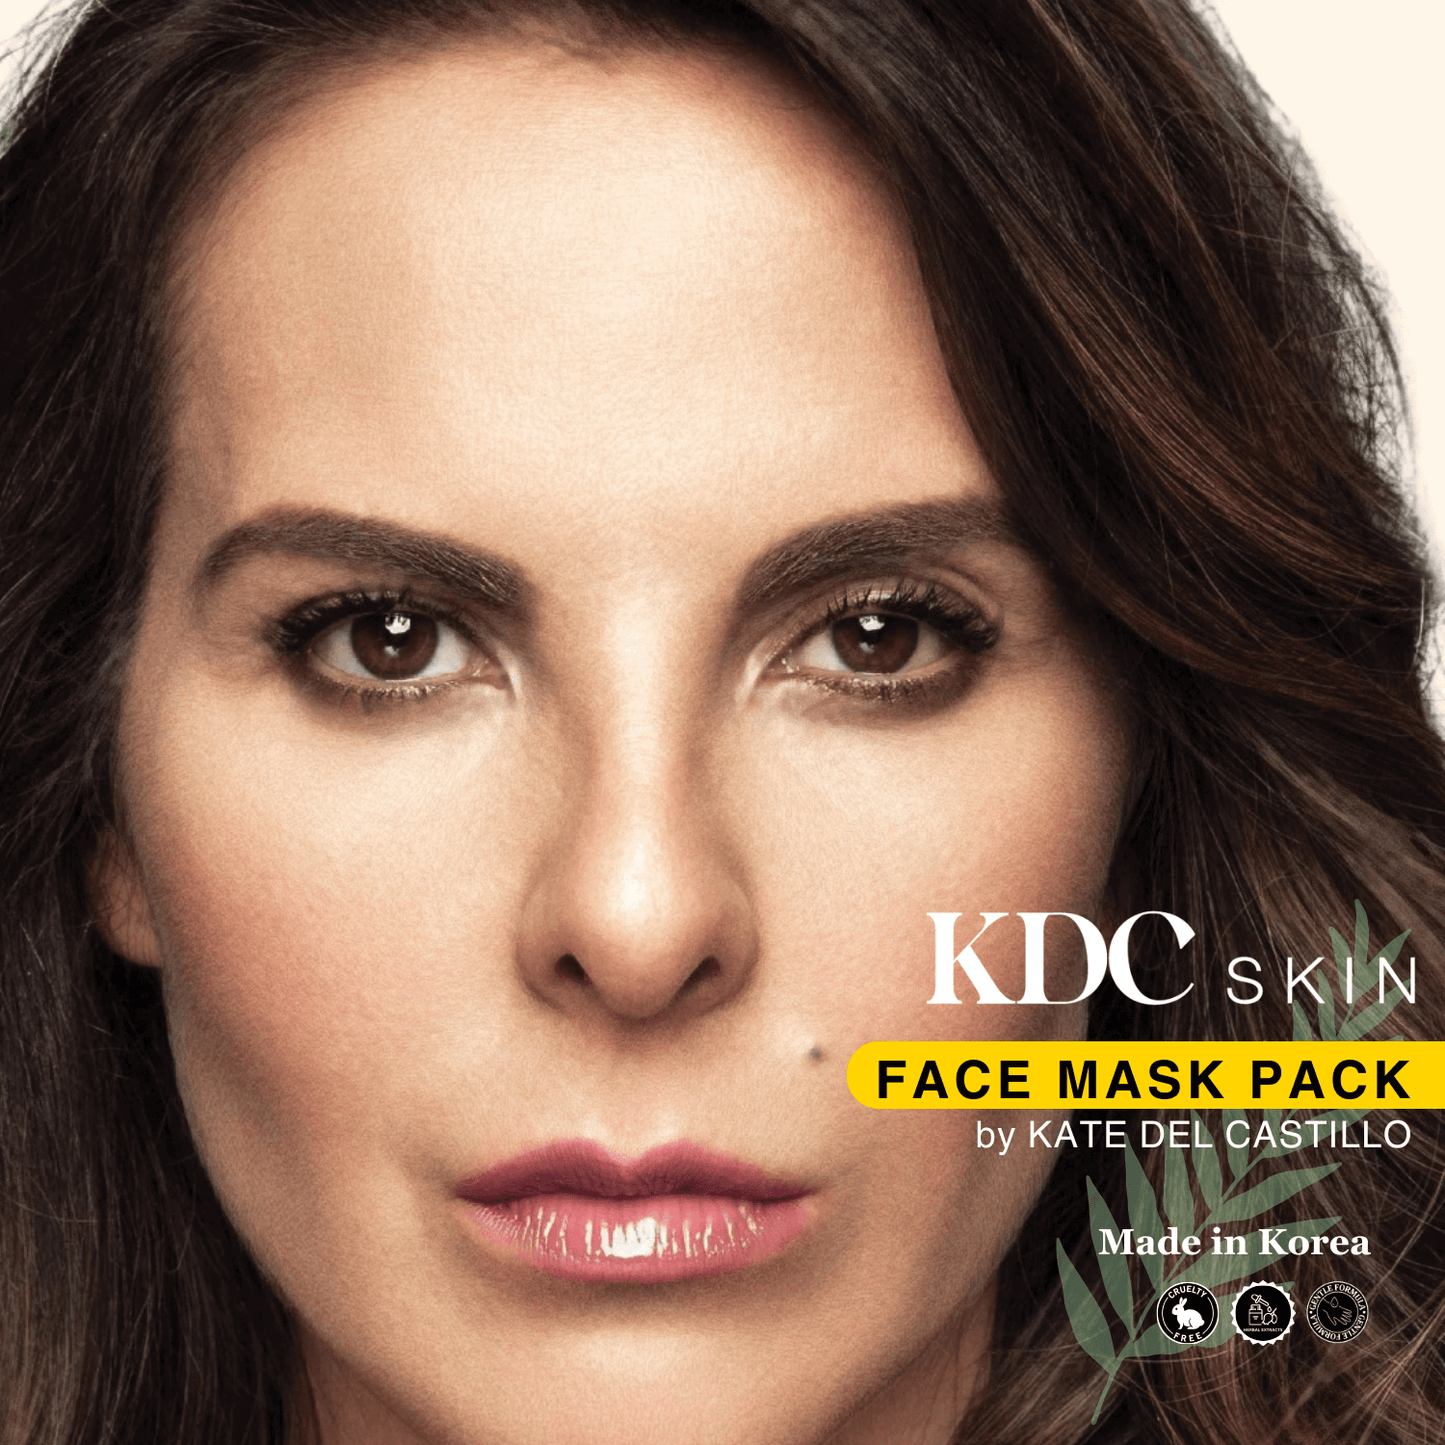 KDC Skin-Cooling Face Mask